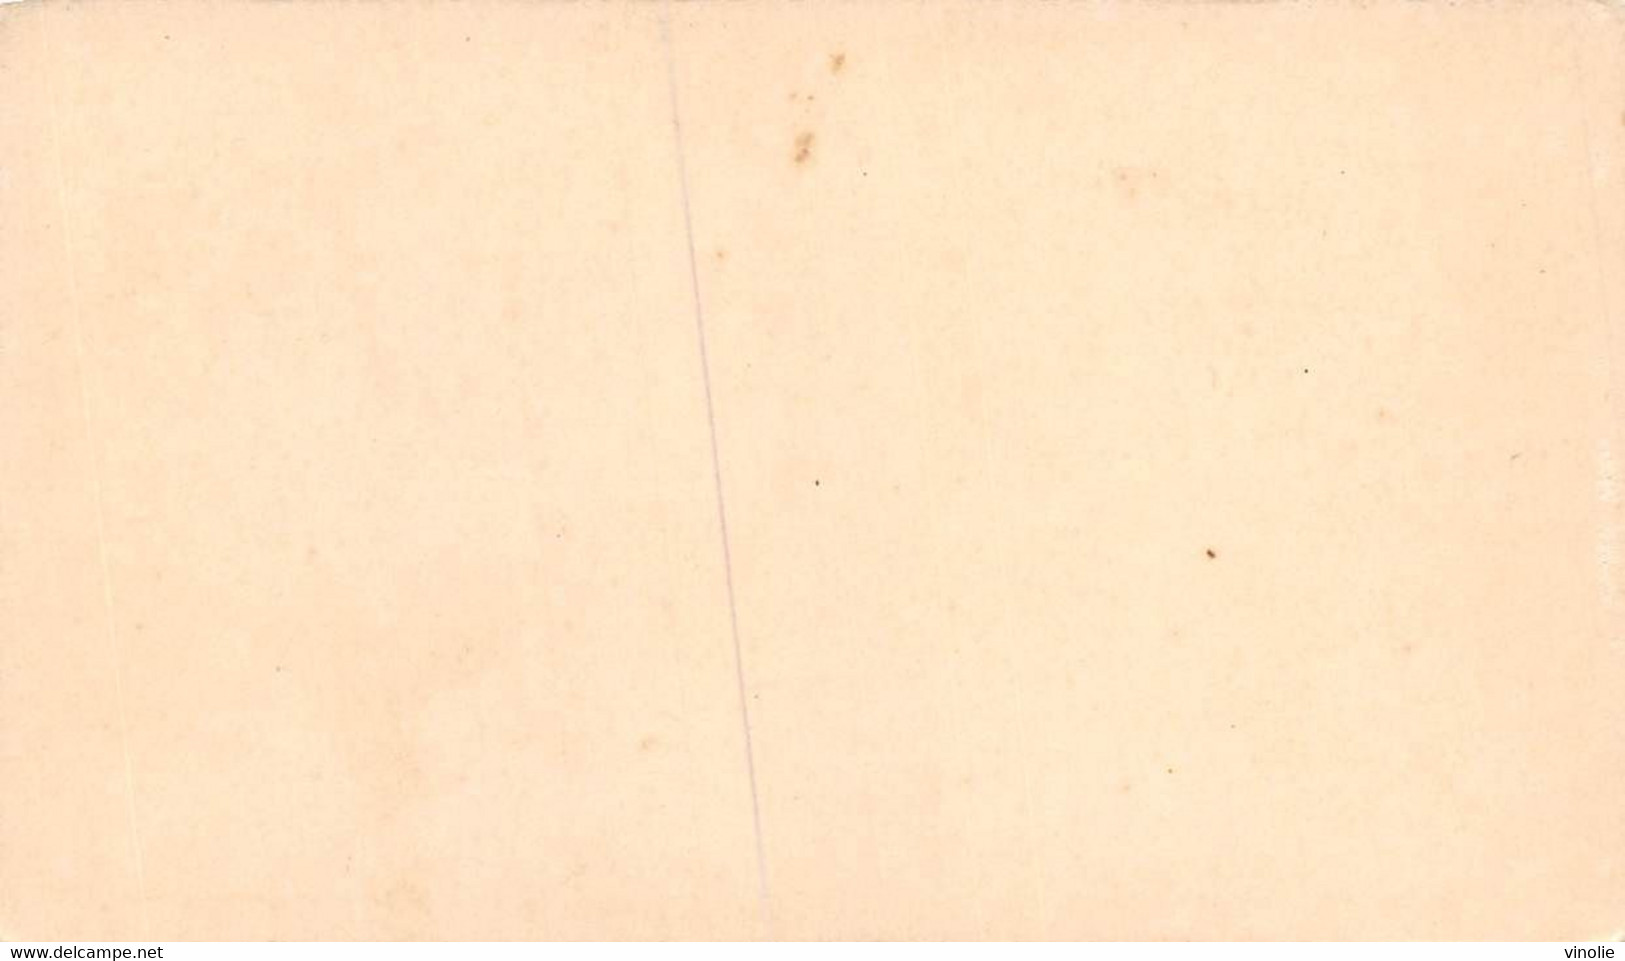 P.21-FO-1587 : IMAGE. CHROMOLITHOGRAPHIE. THEME MONNAIE. ANGELOT DE PHILIPPE VI. 1328. VOLAILLER - Non Classés